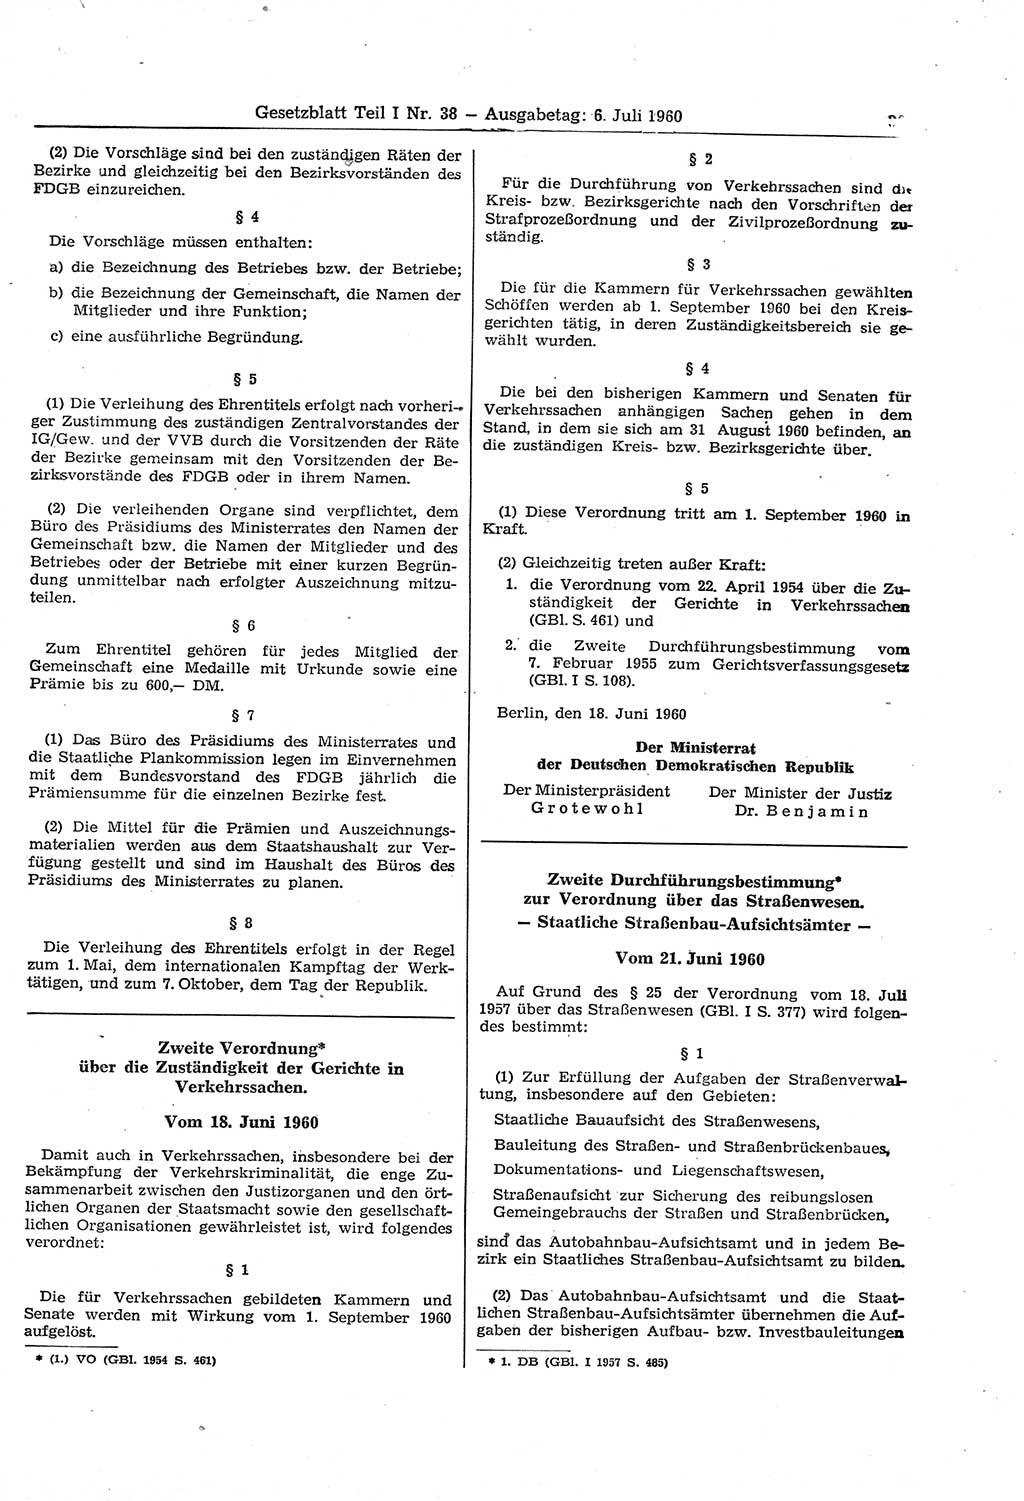 Gesetzblatt (GBl.) der Deutschen Demokratischen Republik (DDR) Teil Ⅰ 1960, Seite 397 (GBl. DDR Ⅰ 1960, S. 397)